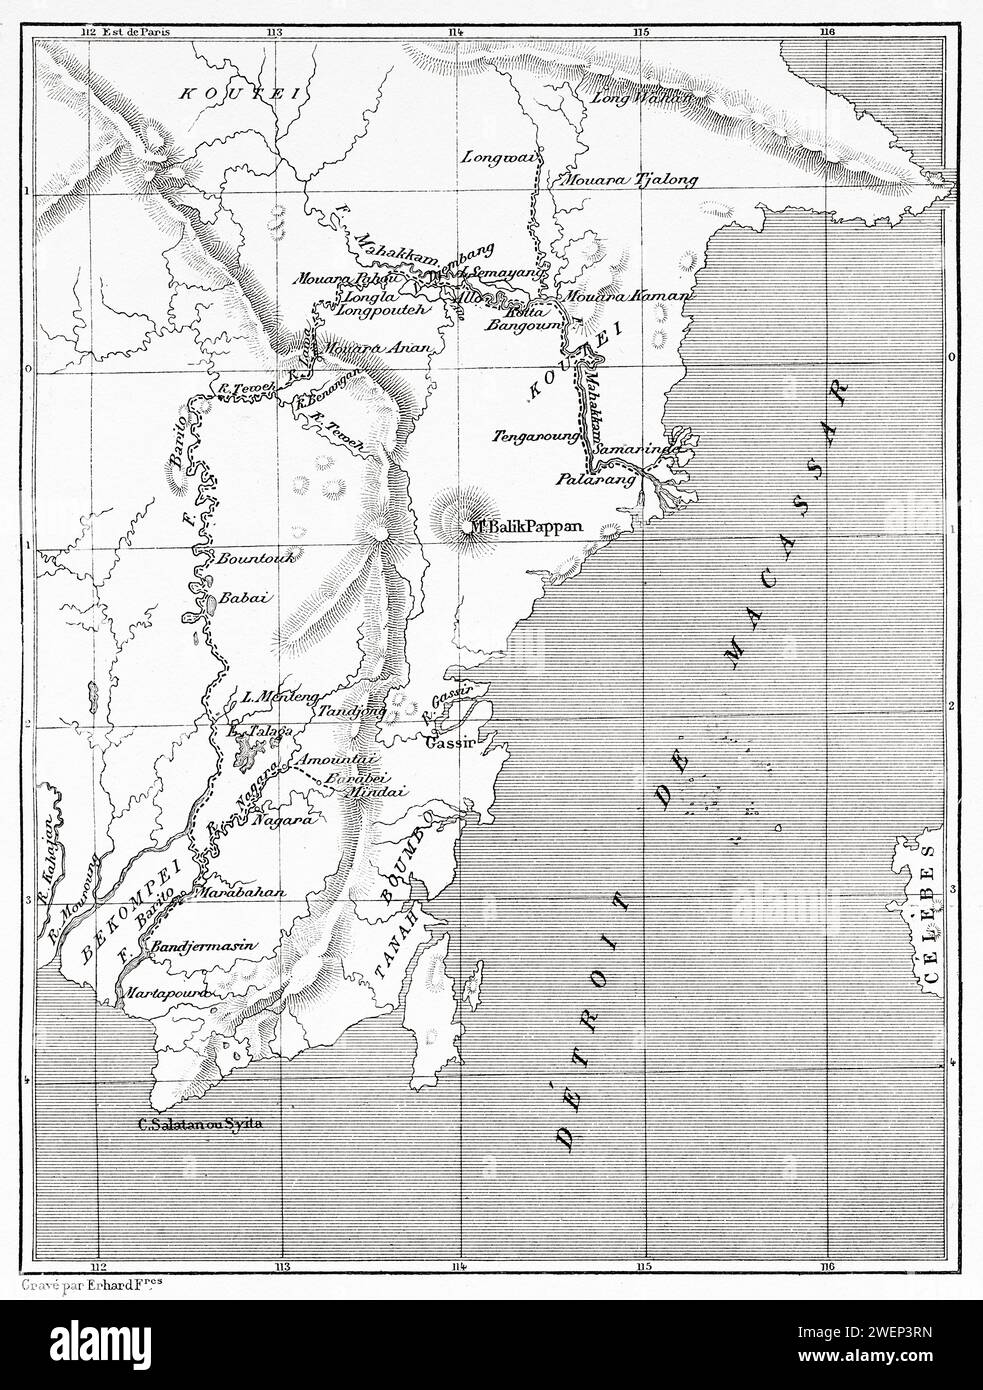 Karte des südöstlichen Teils der Insel Borneo, Indonesien. Von Koutei nach Banjarmasin, eine Reise durch Borneo von Carl Bock (1849 - 1932) Stockfoto